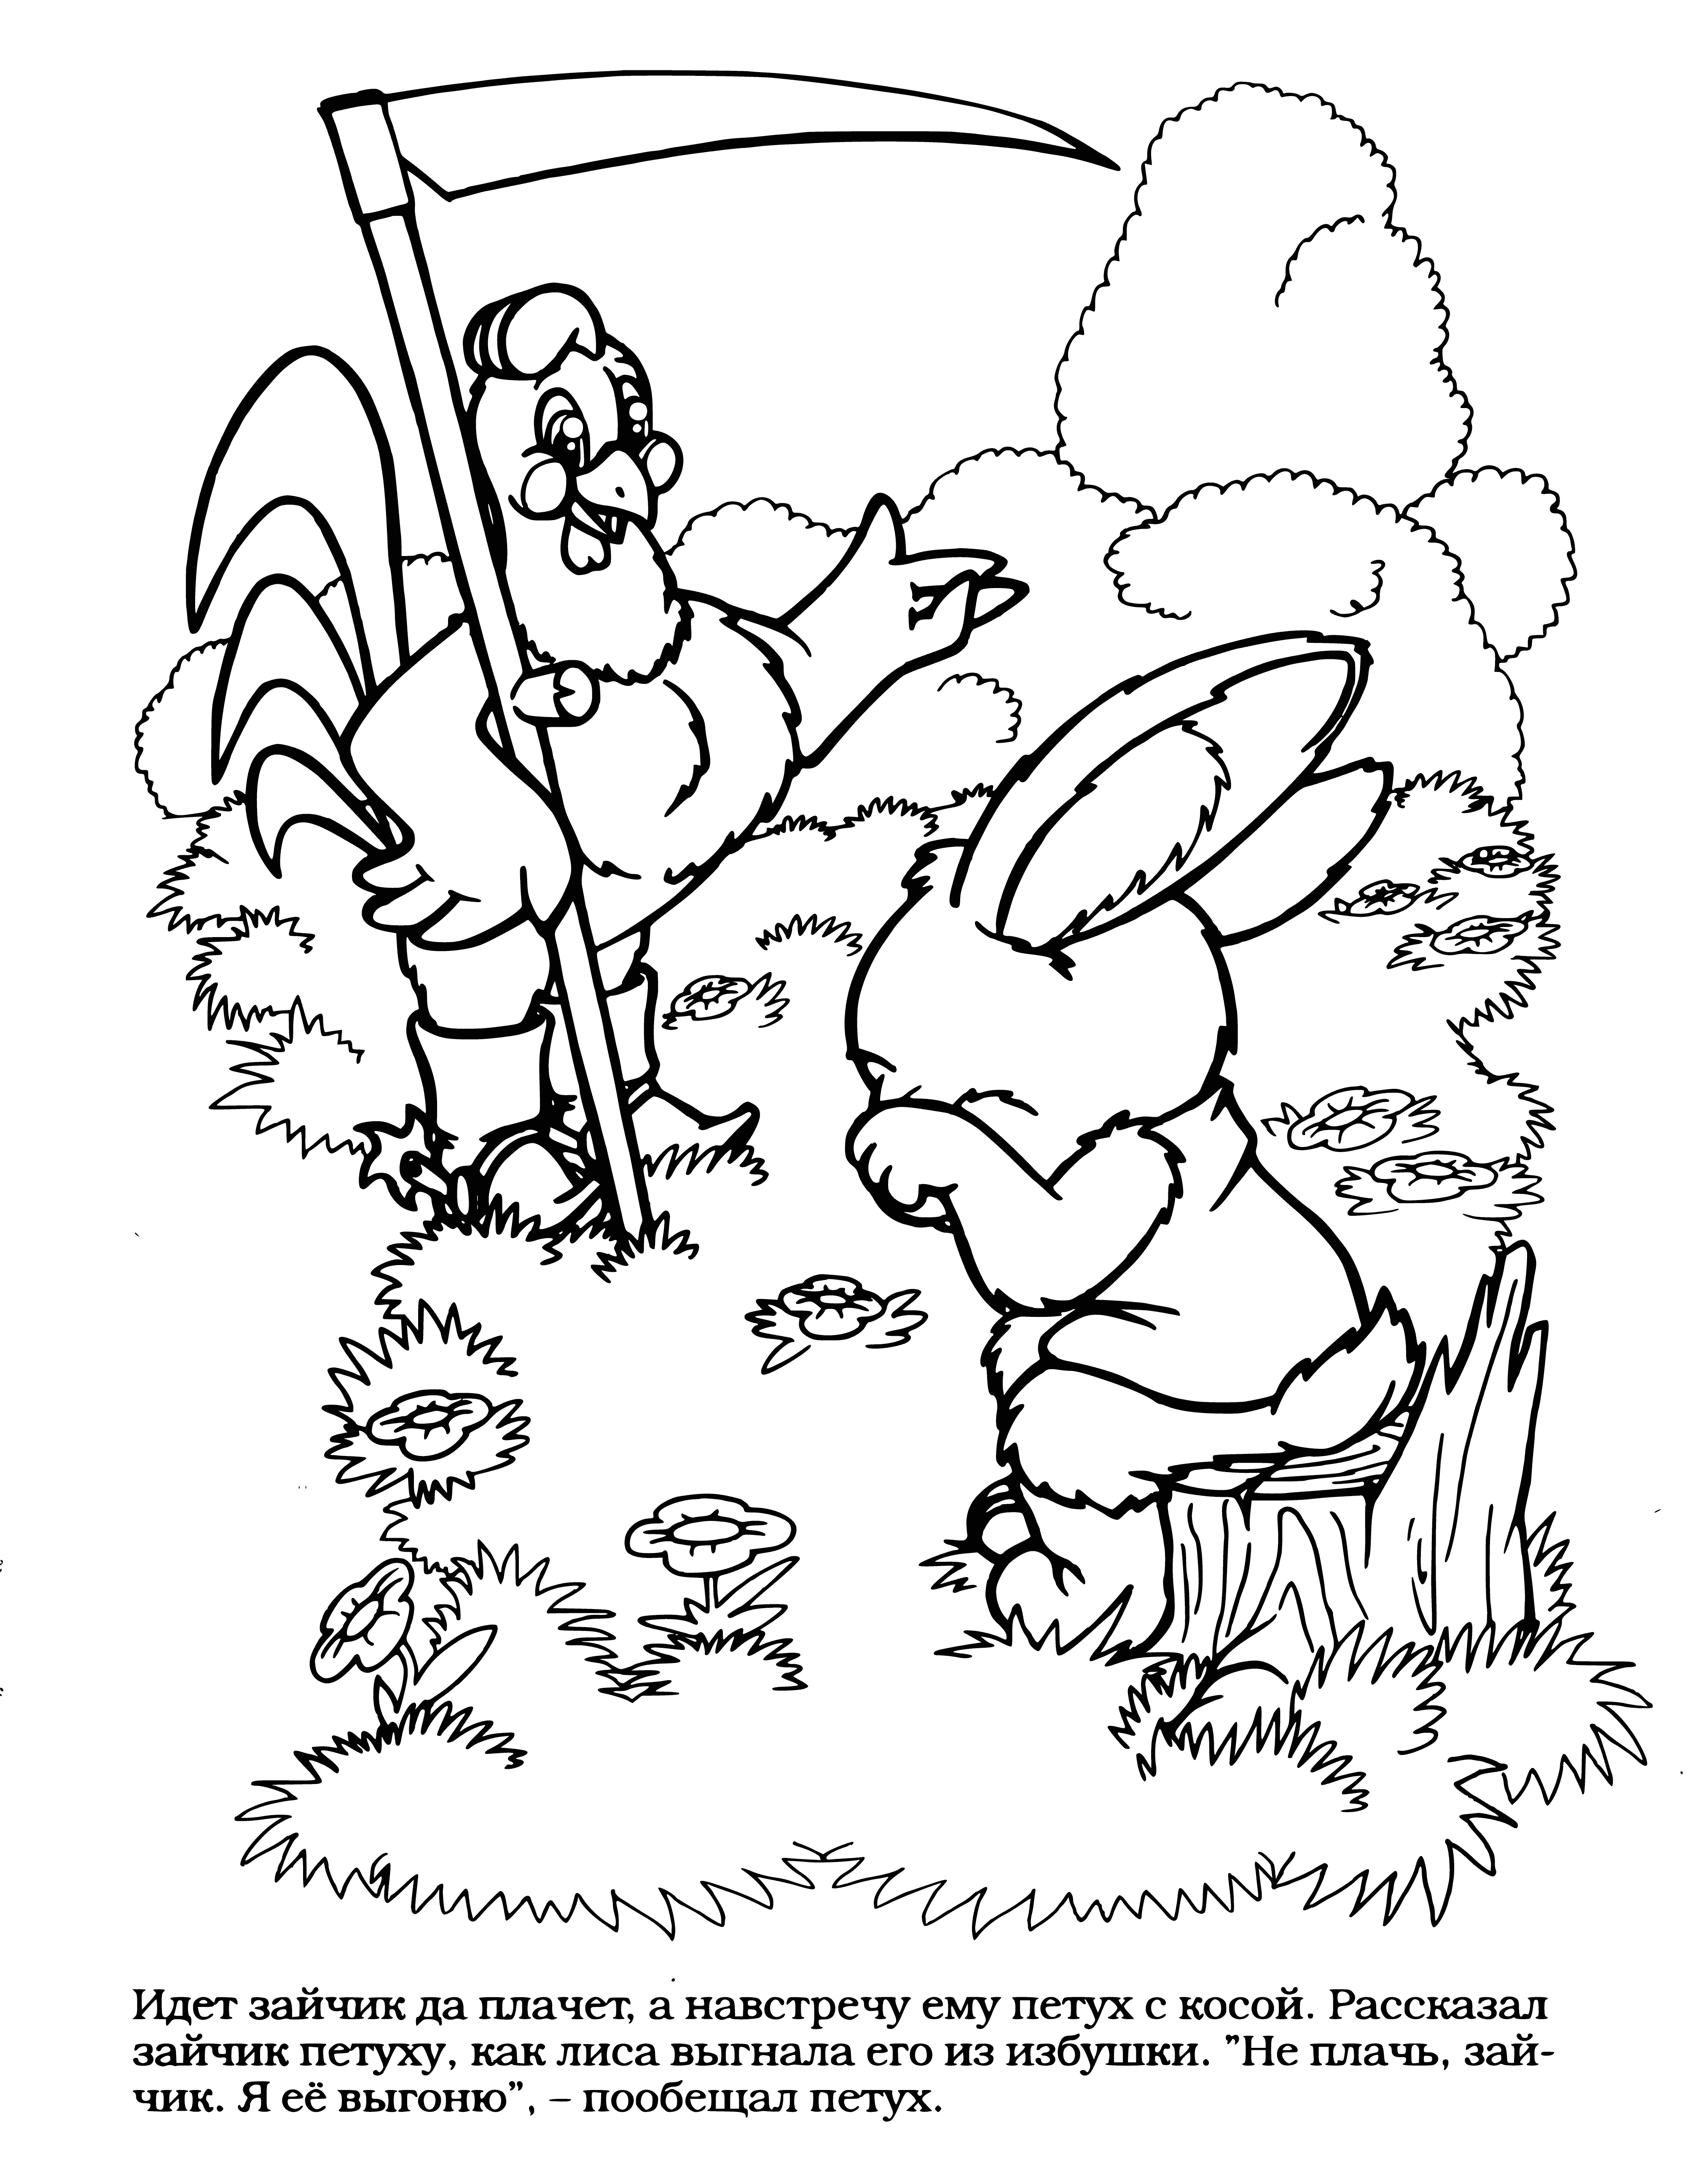 Tavşan bir horozla tanıştı boyama sayfası